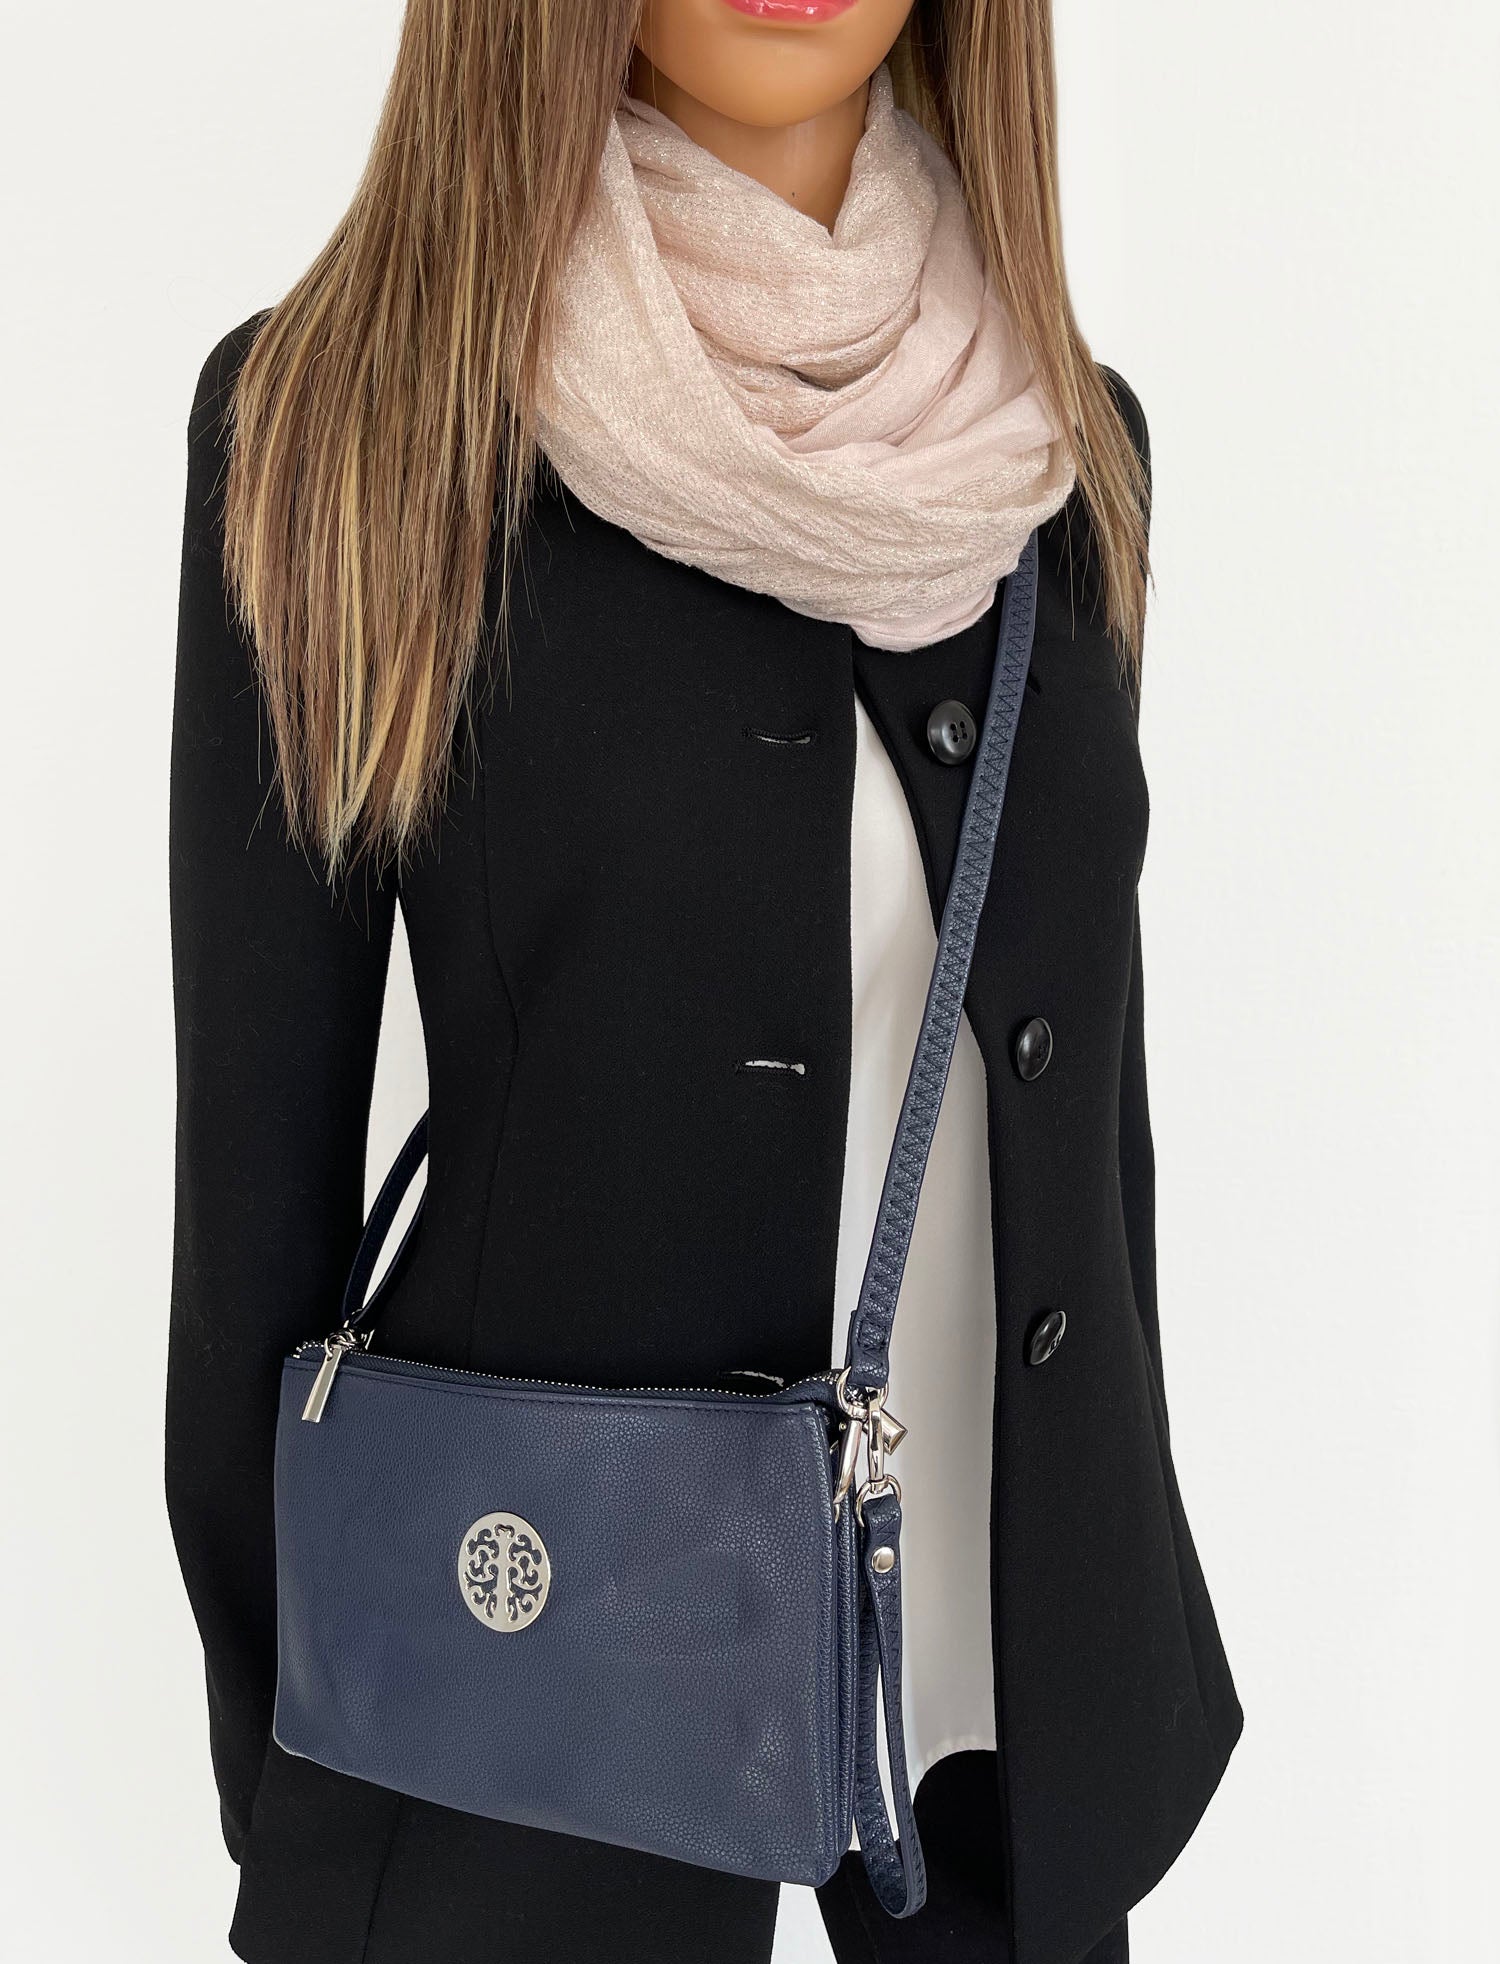 Rosetti Multi-compartment Shoulder Bag Purse | Shoulder bag, Purses and  bags, Bags